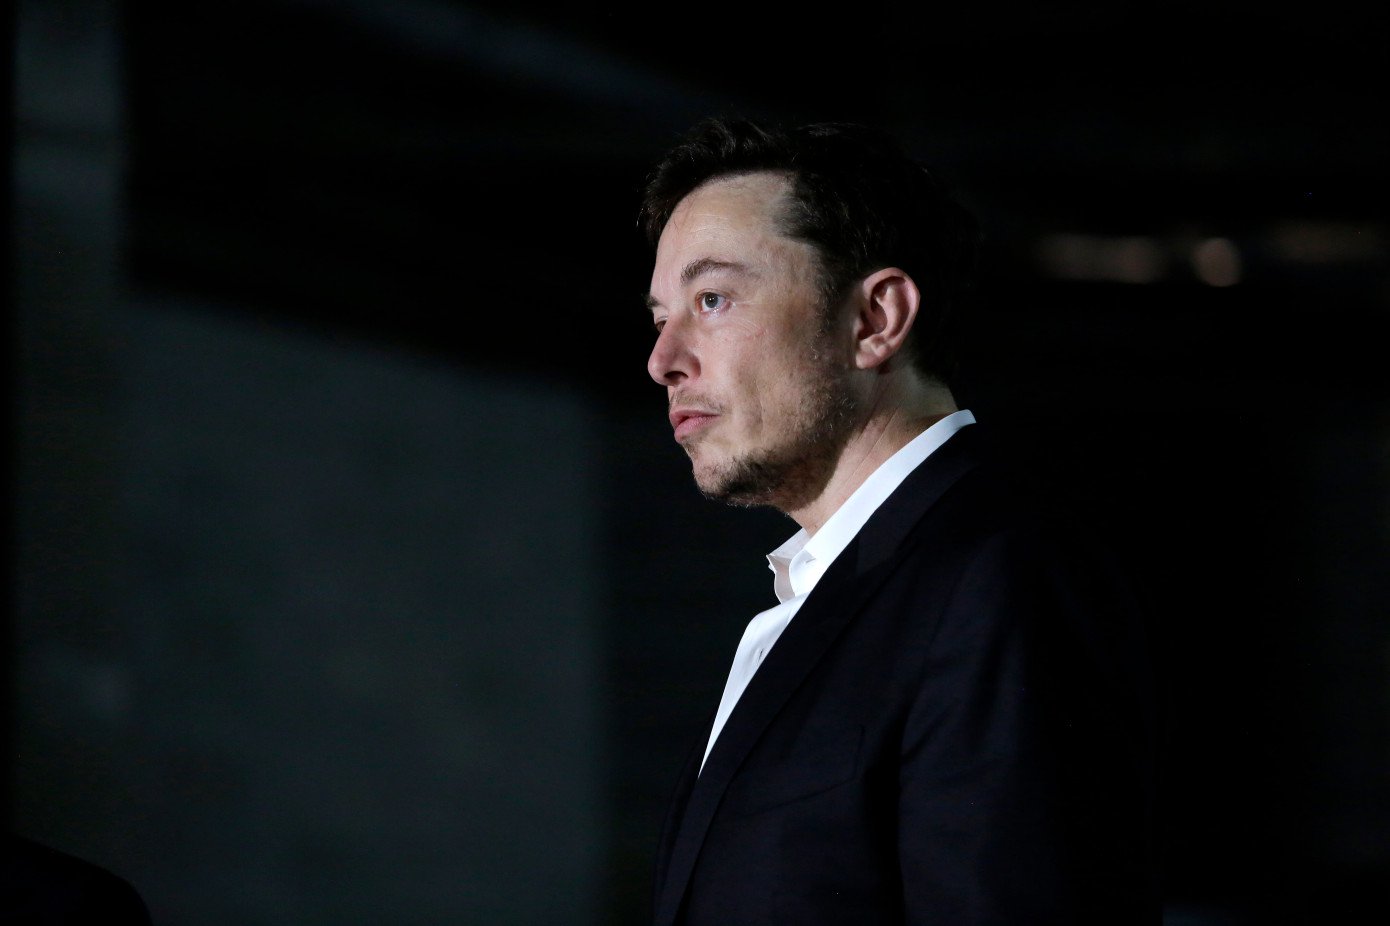 Danach hat ilon Musk entlassen auf Antrag SEC. Tesla Geldbusse von 20 Millionen US-Dollar